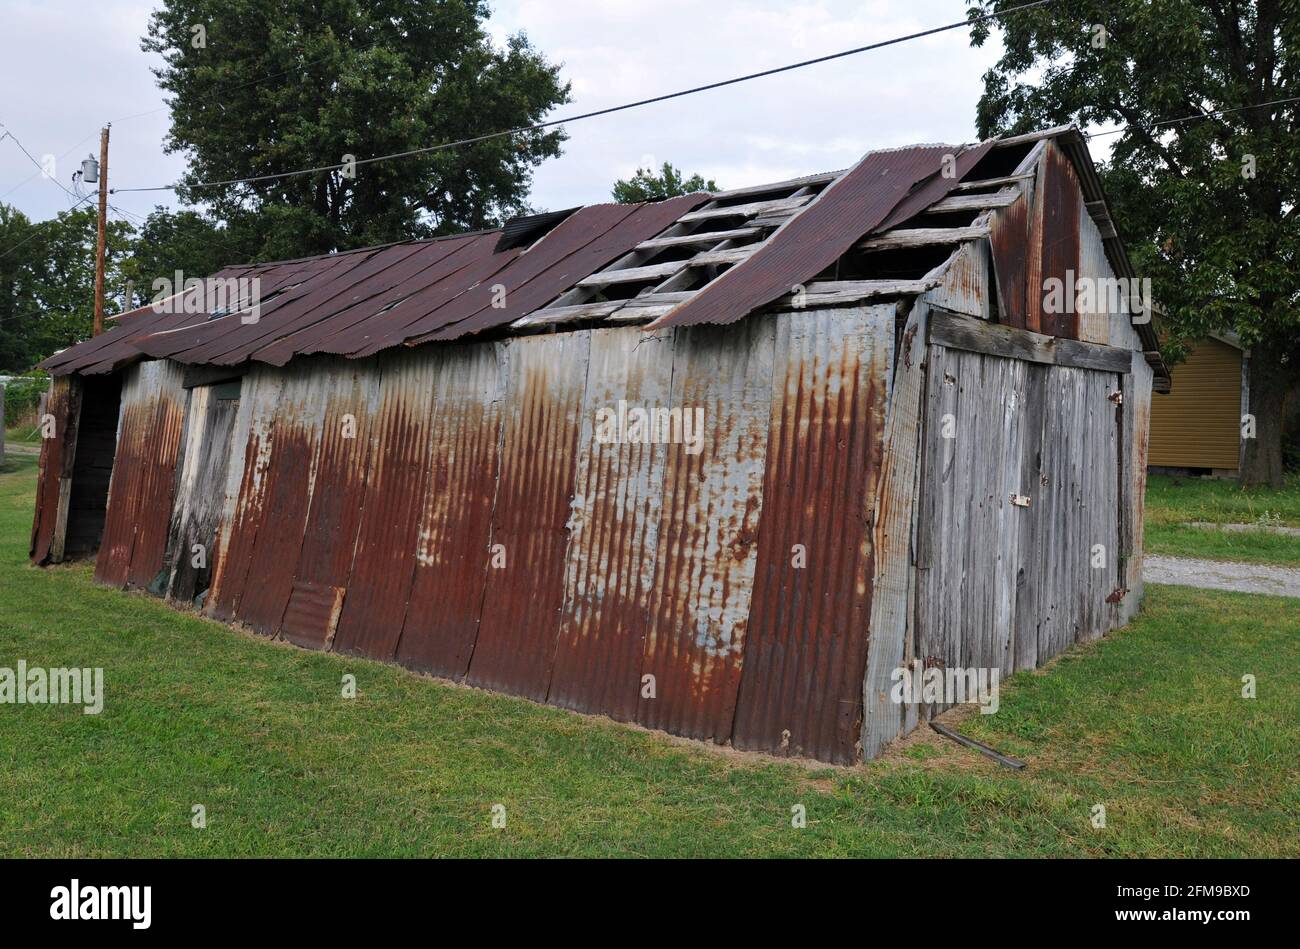 La vieille grange rouille de la maison de campagne de Mickey Mantle à Commerce, Oklahoma. Mantle a utilisé le hangar comme un filet de sécurité comme il a pratiqué. Banque D'Images